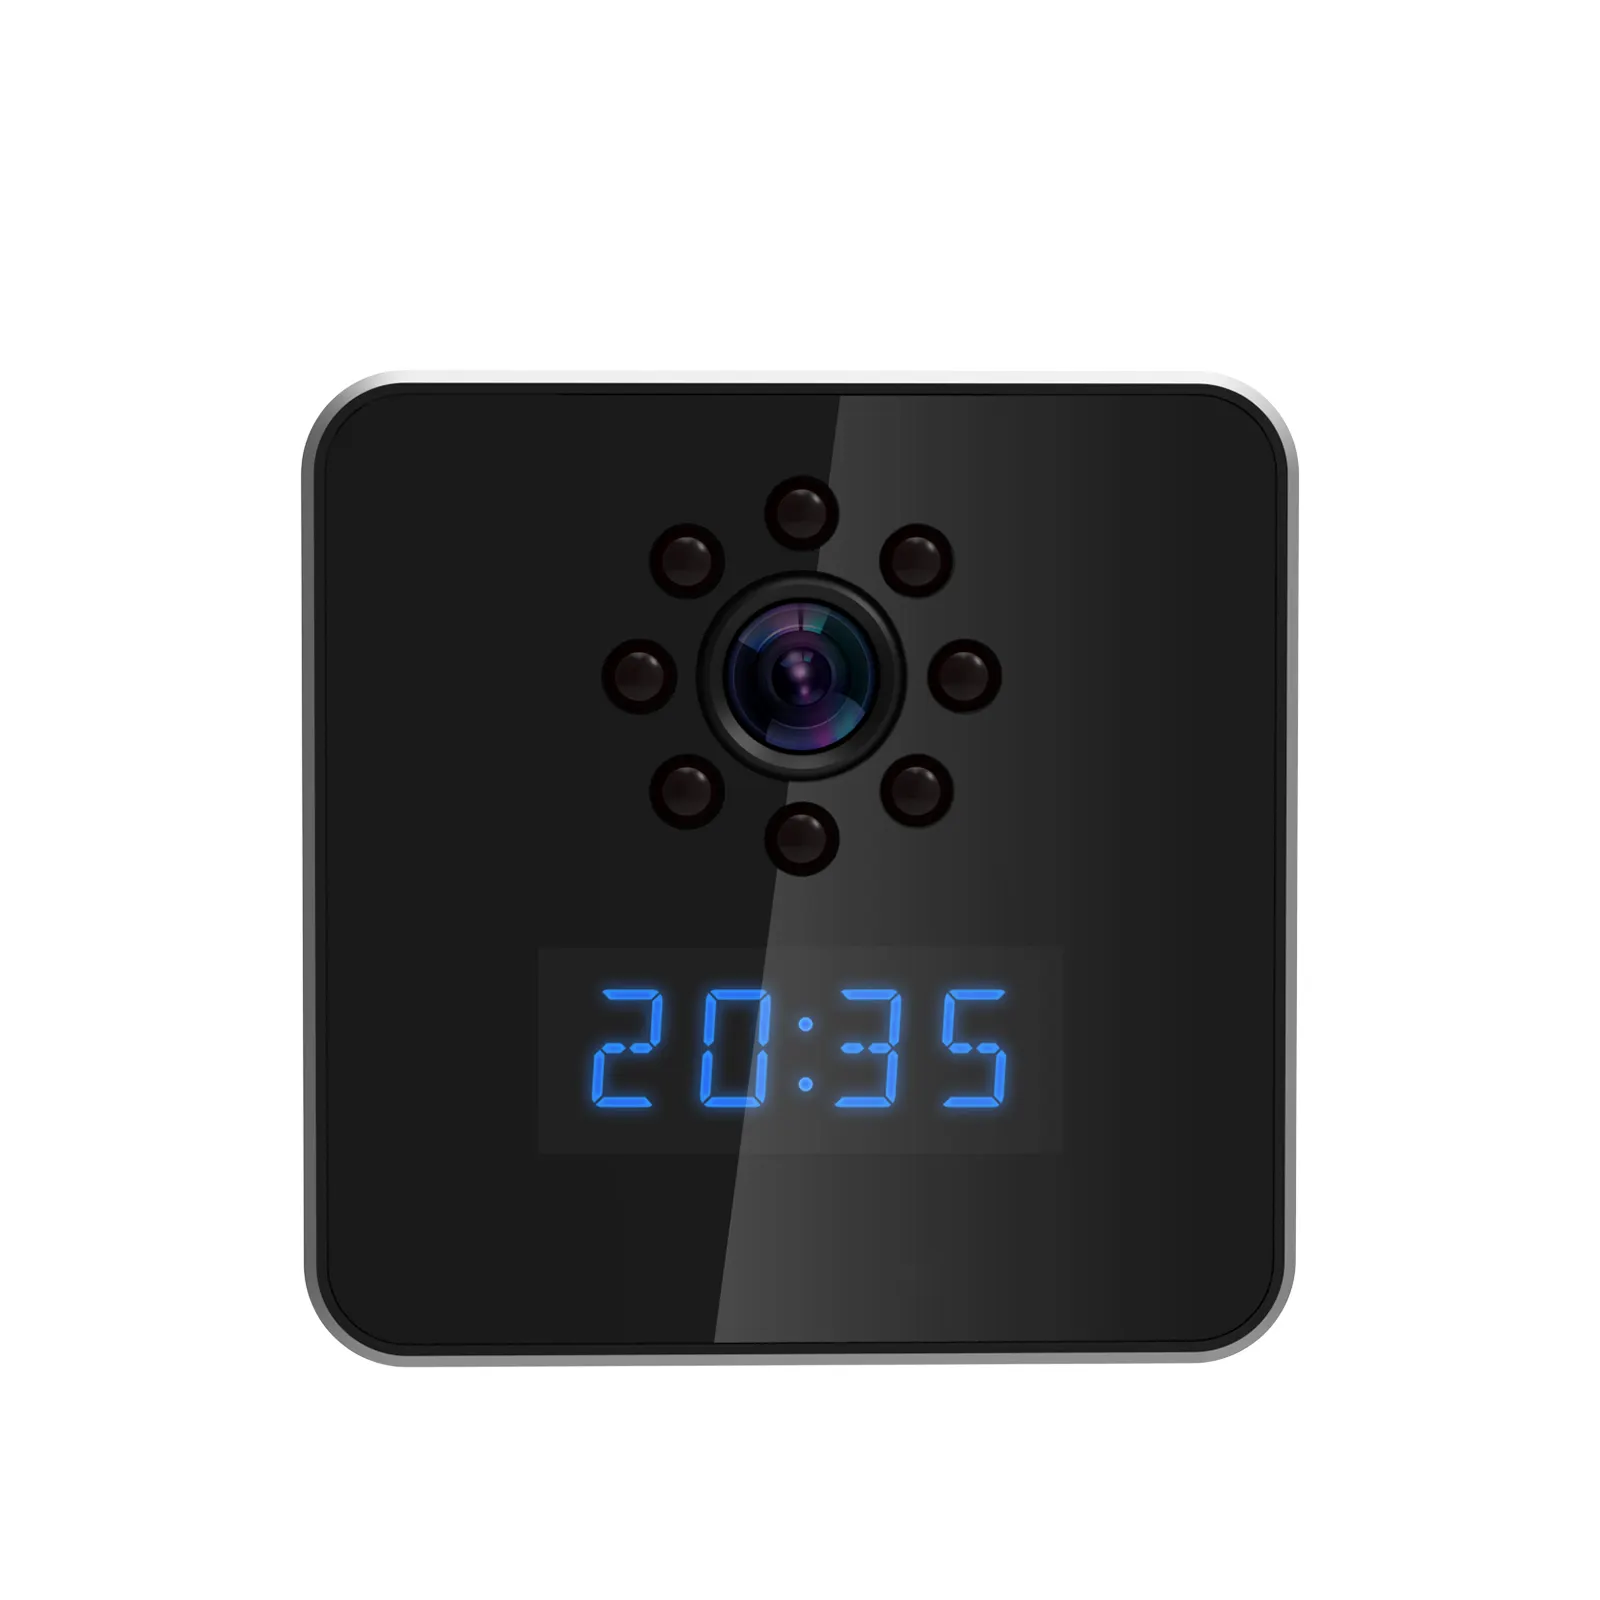 Nuevo producto Z22 HD 2MP Mini WiFi Socket Reloj Cámara con visión nocturna Audio bidireccional Soporte Almacenamiento en la nube y tarjeta TF